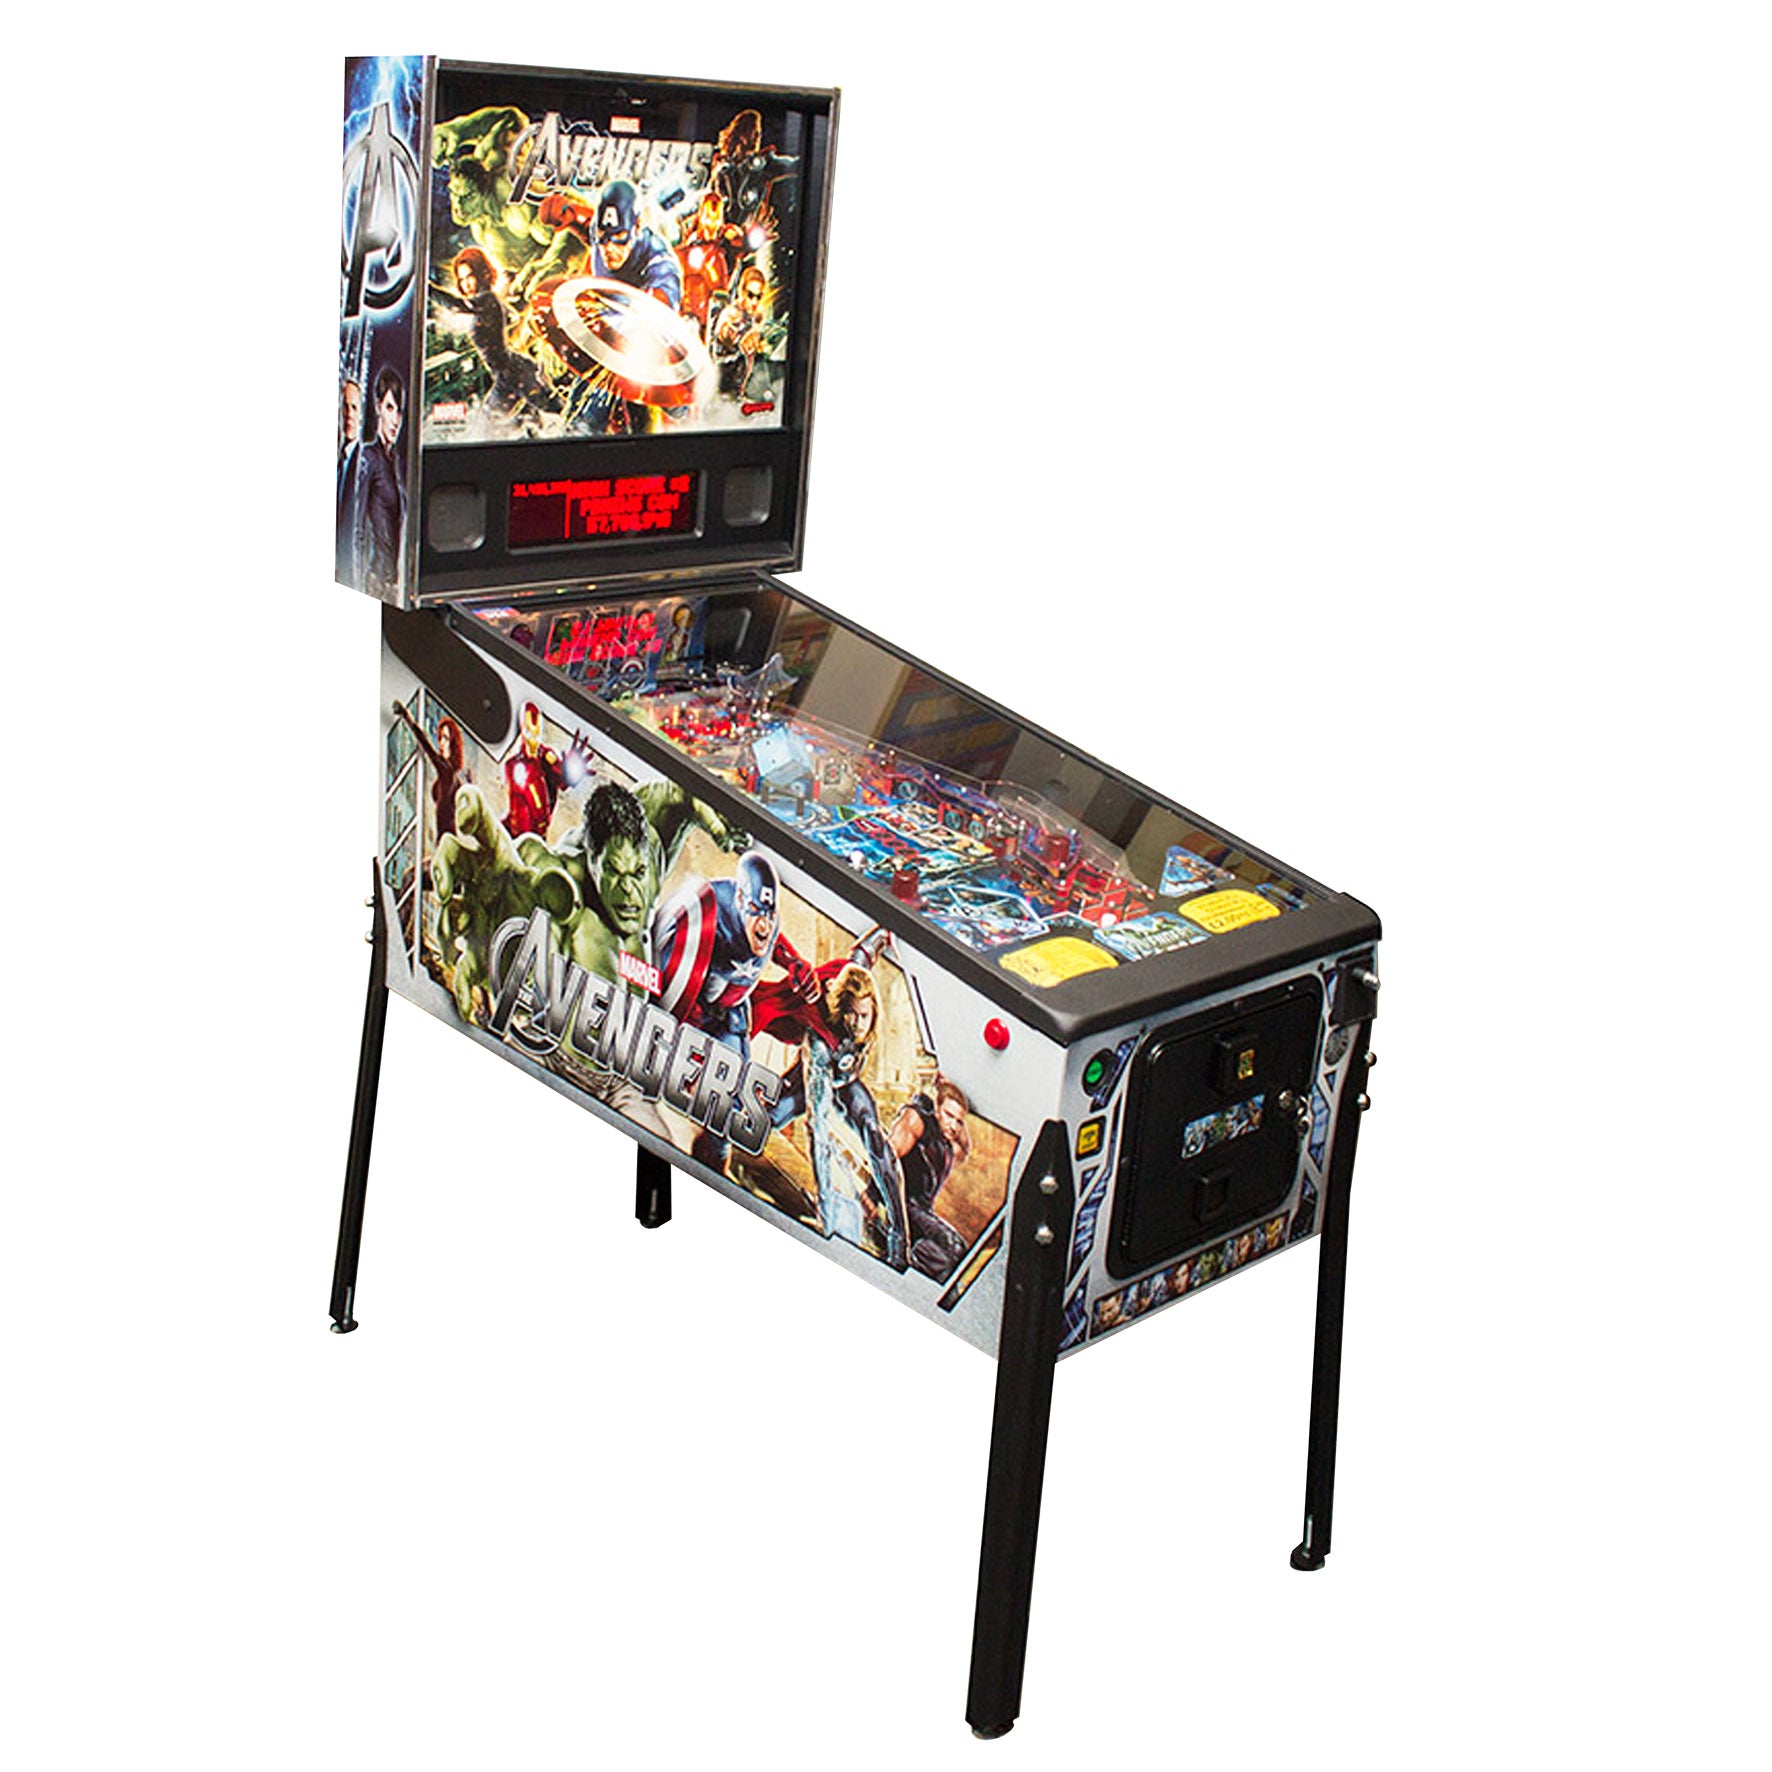 2012 Avengers Pro Pinball Machine by Stern